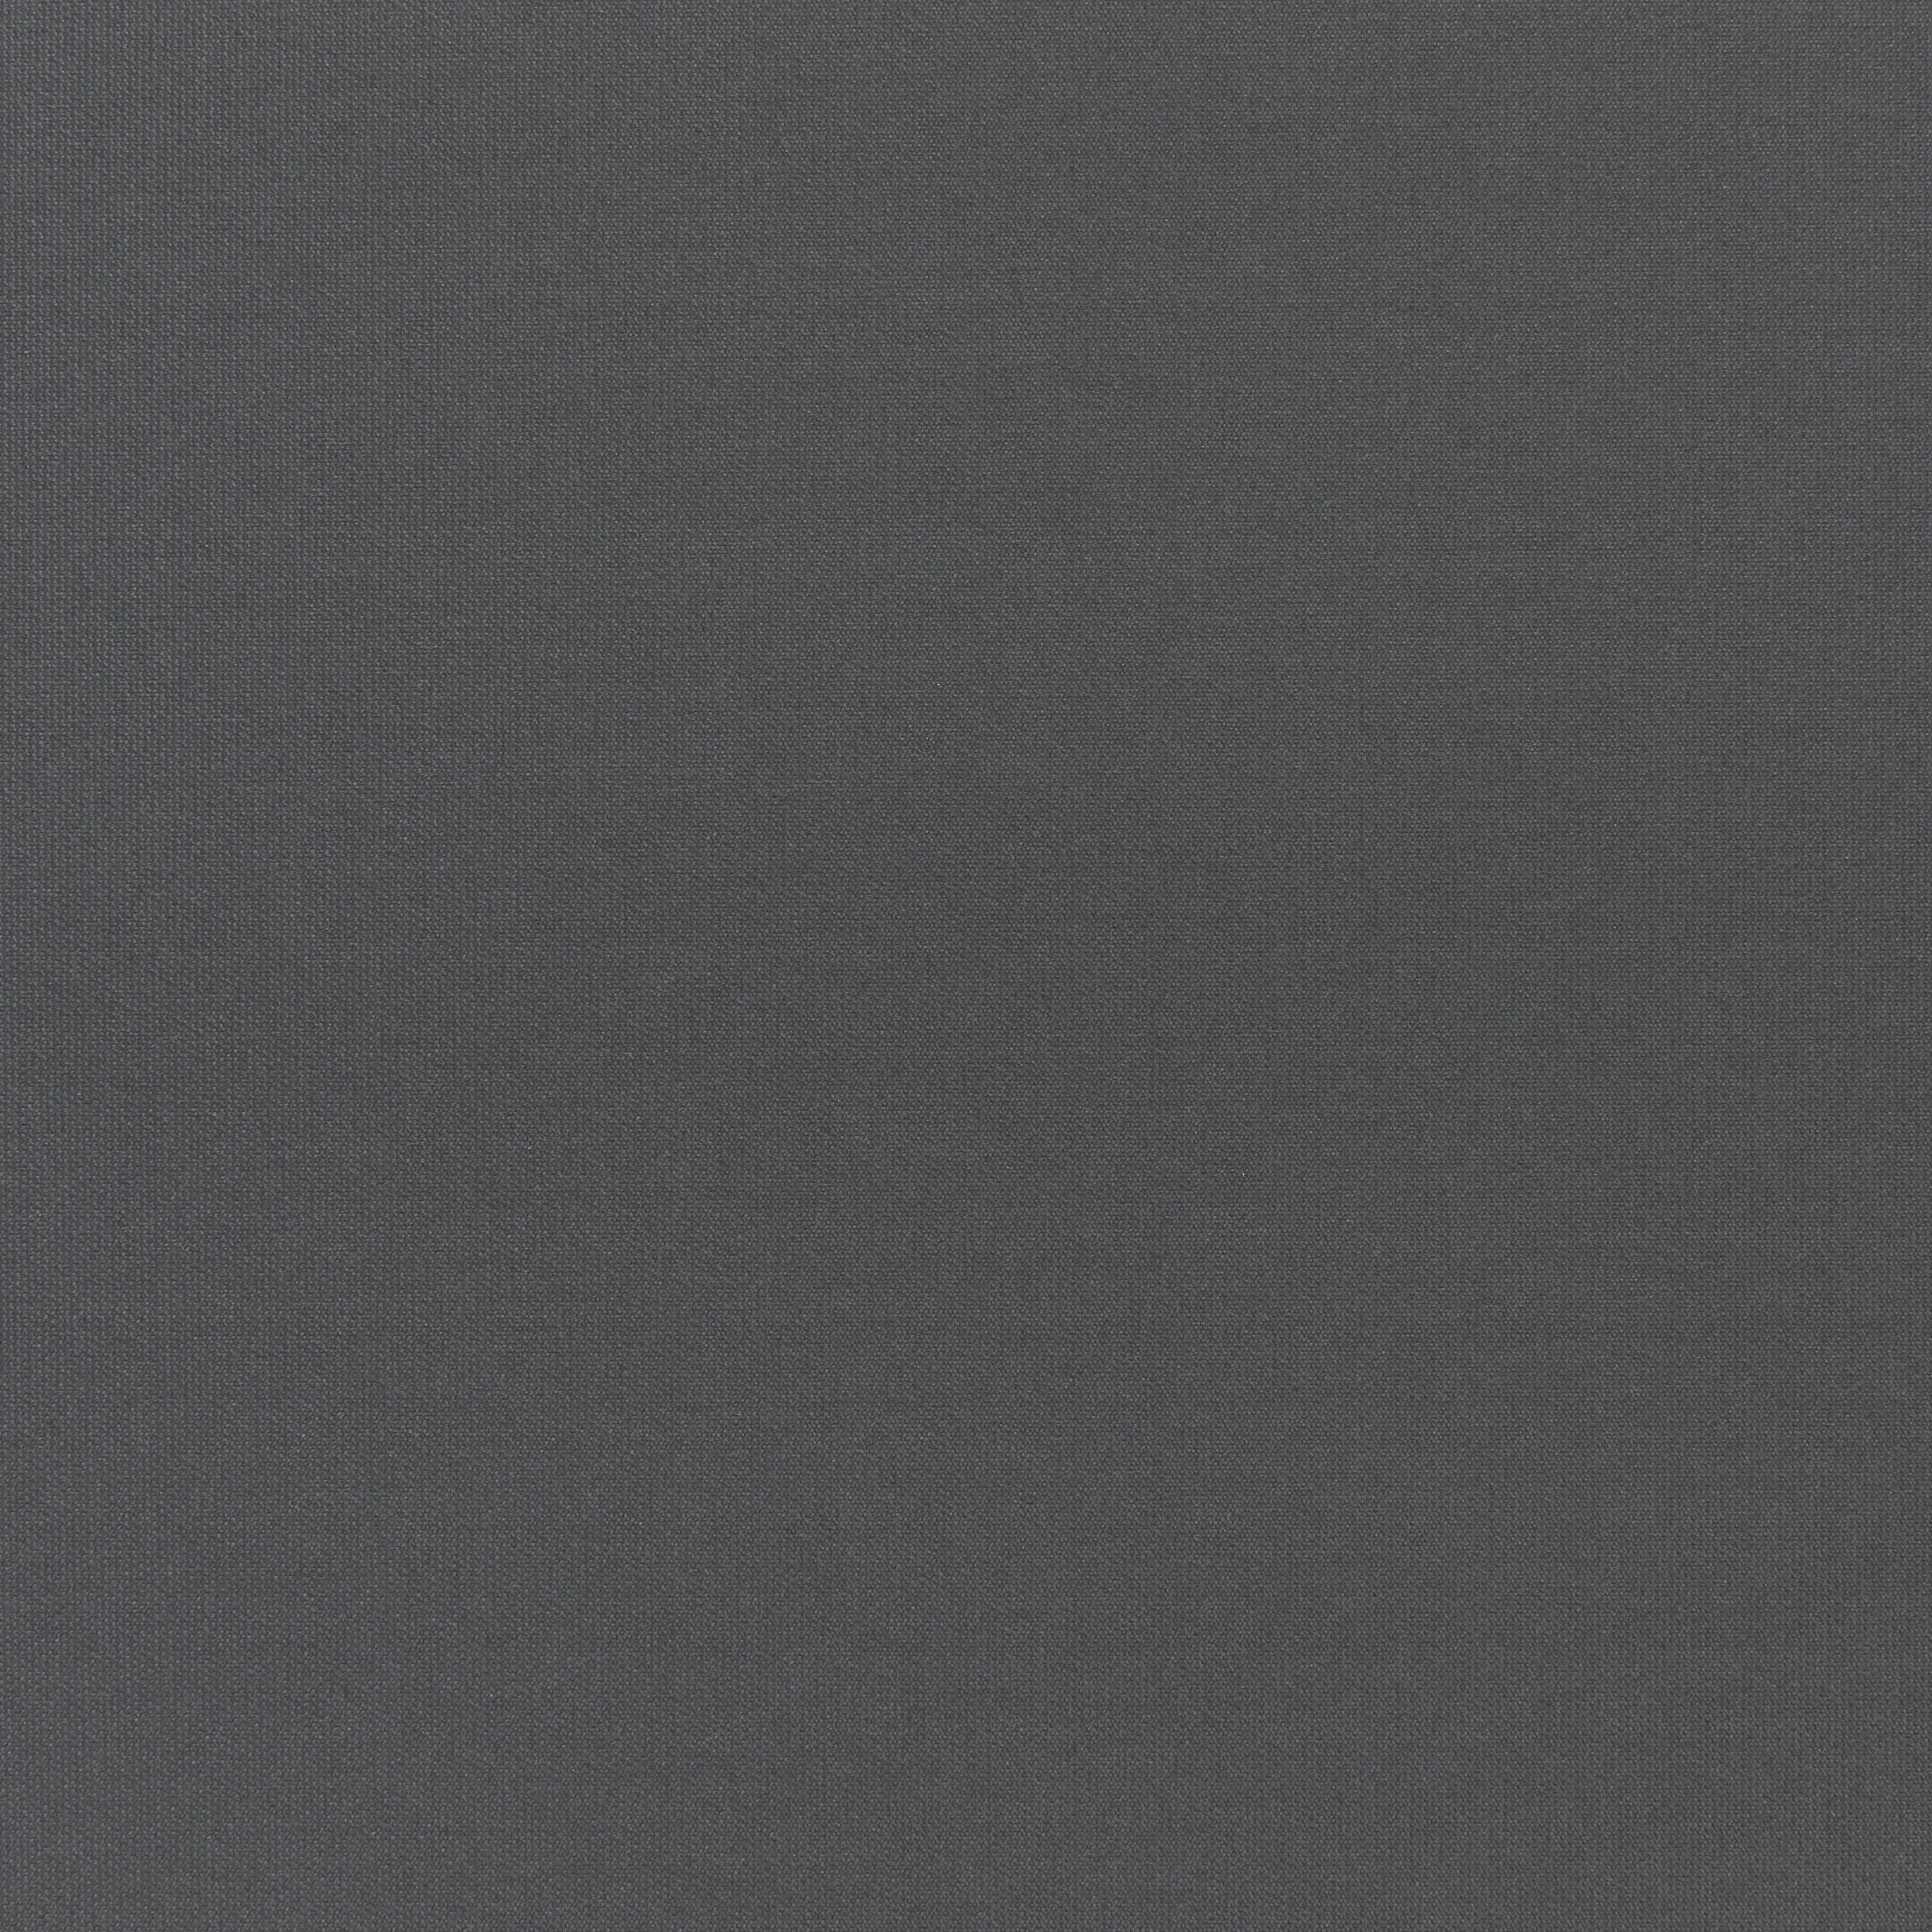 Tenda a rullo oscurante INSPIRE Tokyo grigio scuro 120 x 250 cm - 4